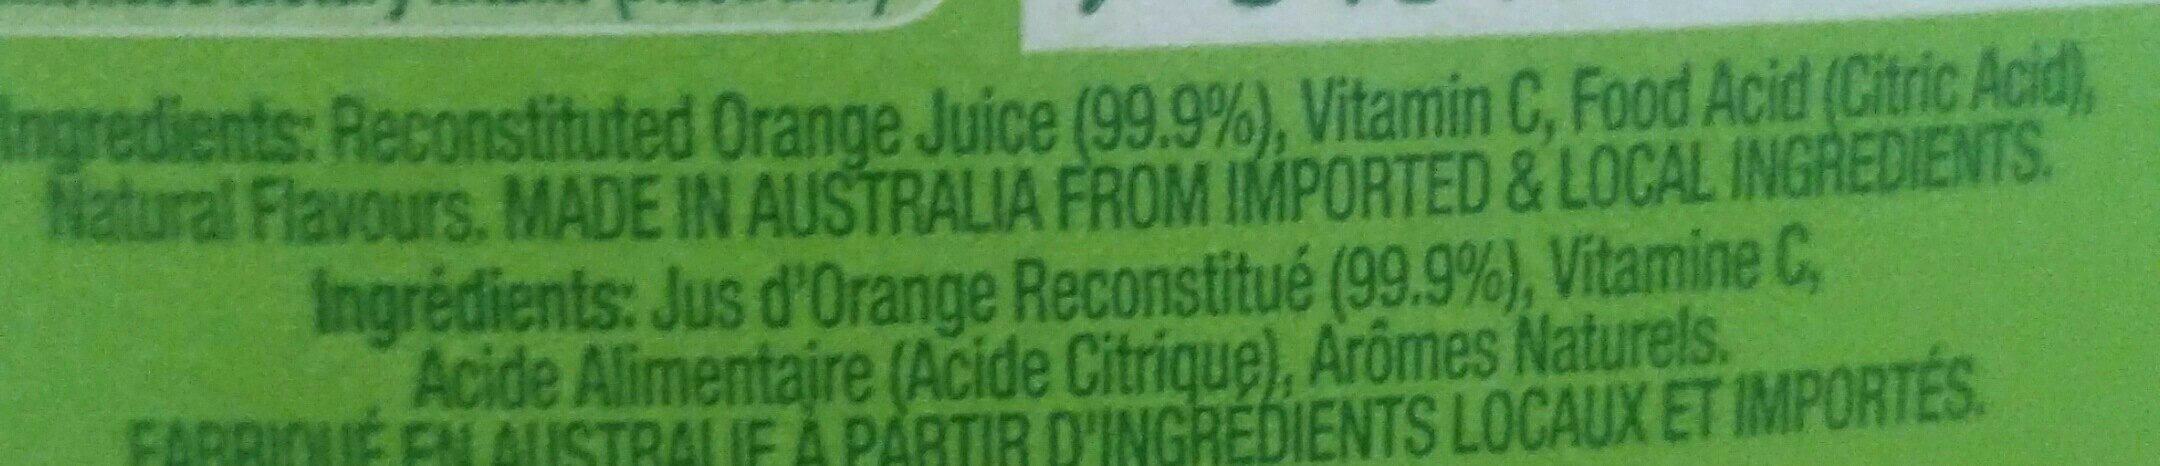 Orange Juice - Ingredients - fr